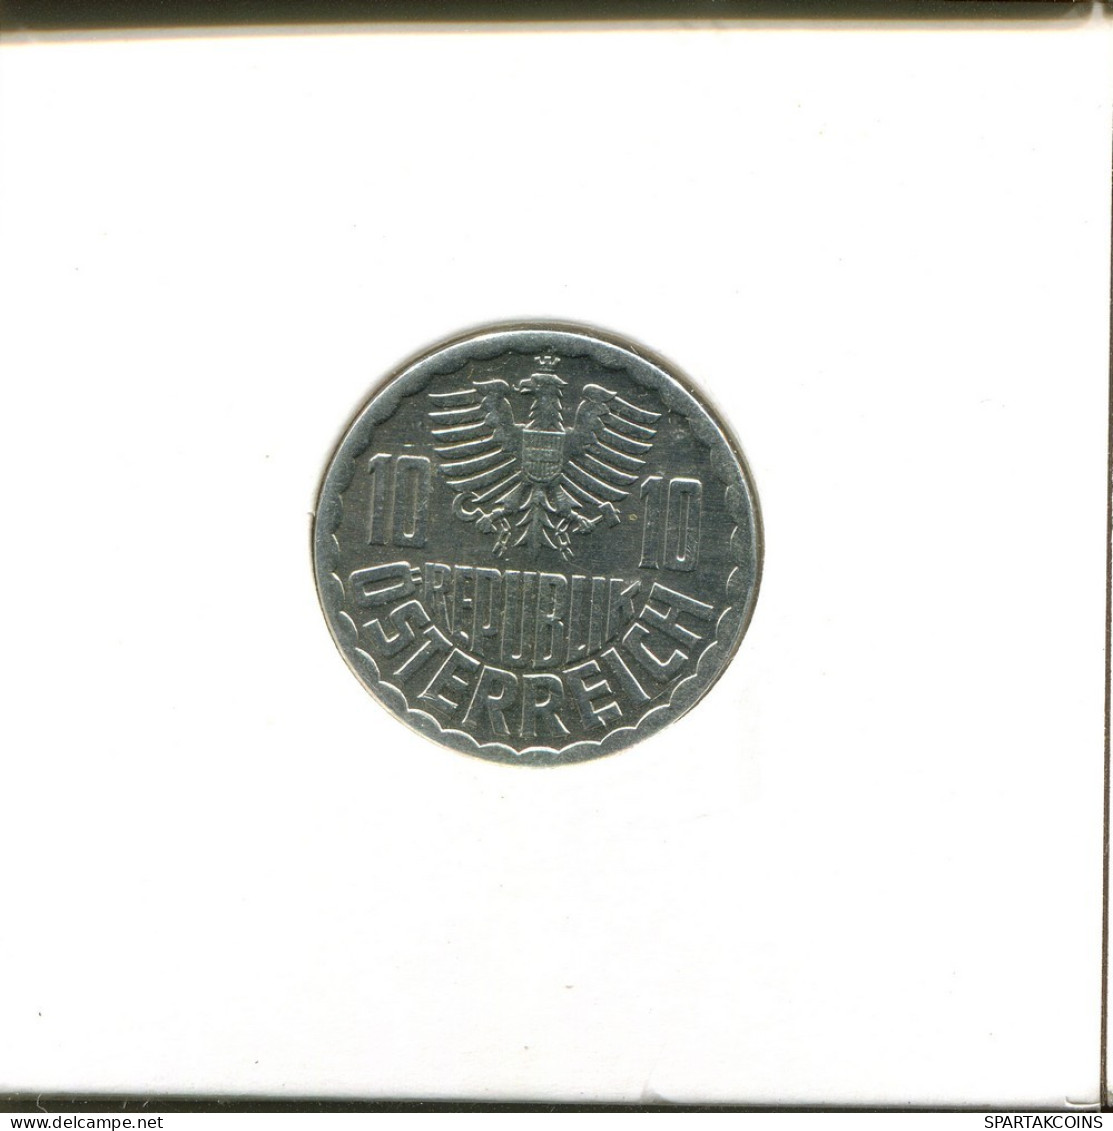 10 GROSCHEN 1983 AUSTRIA Coin #AT563.U.A - Oostenrijk